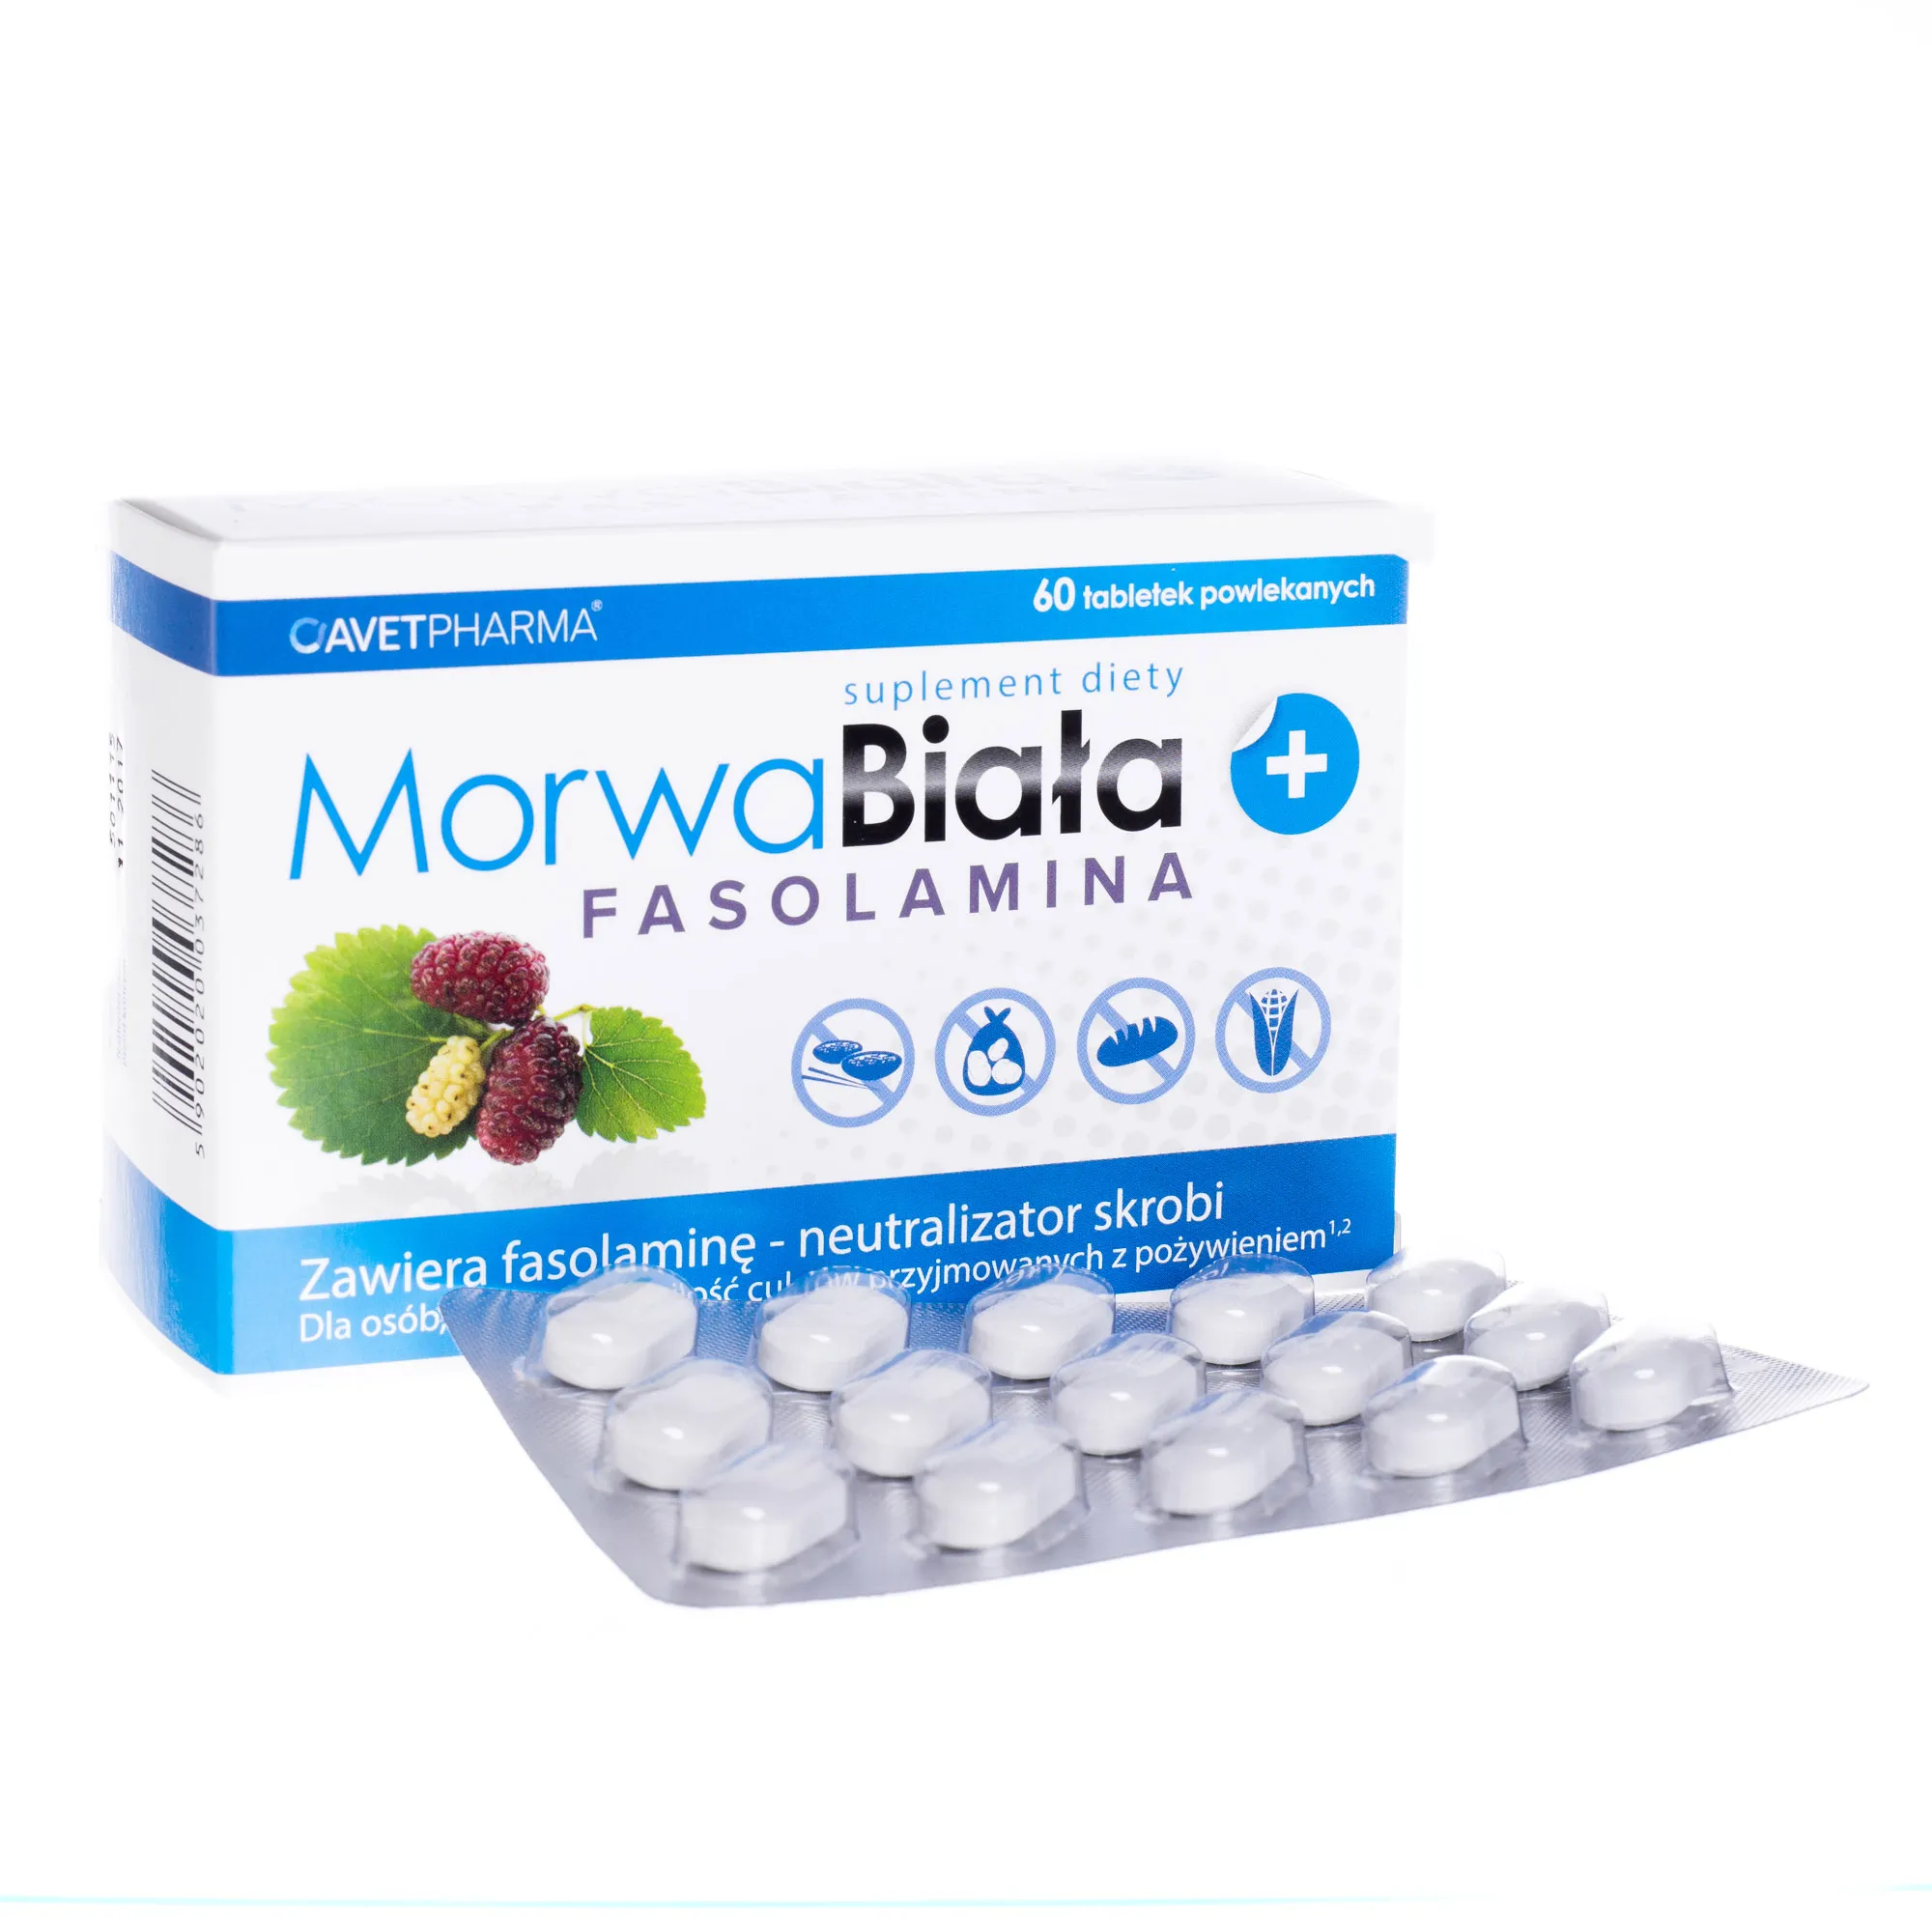 Morwa Biała + Fasolamina, 60 tabletek powlekanych